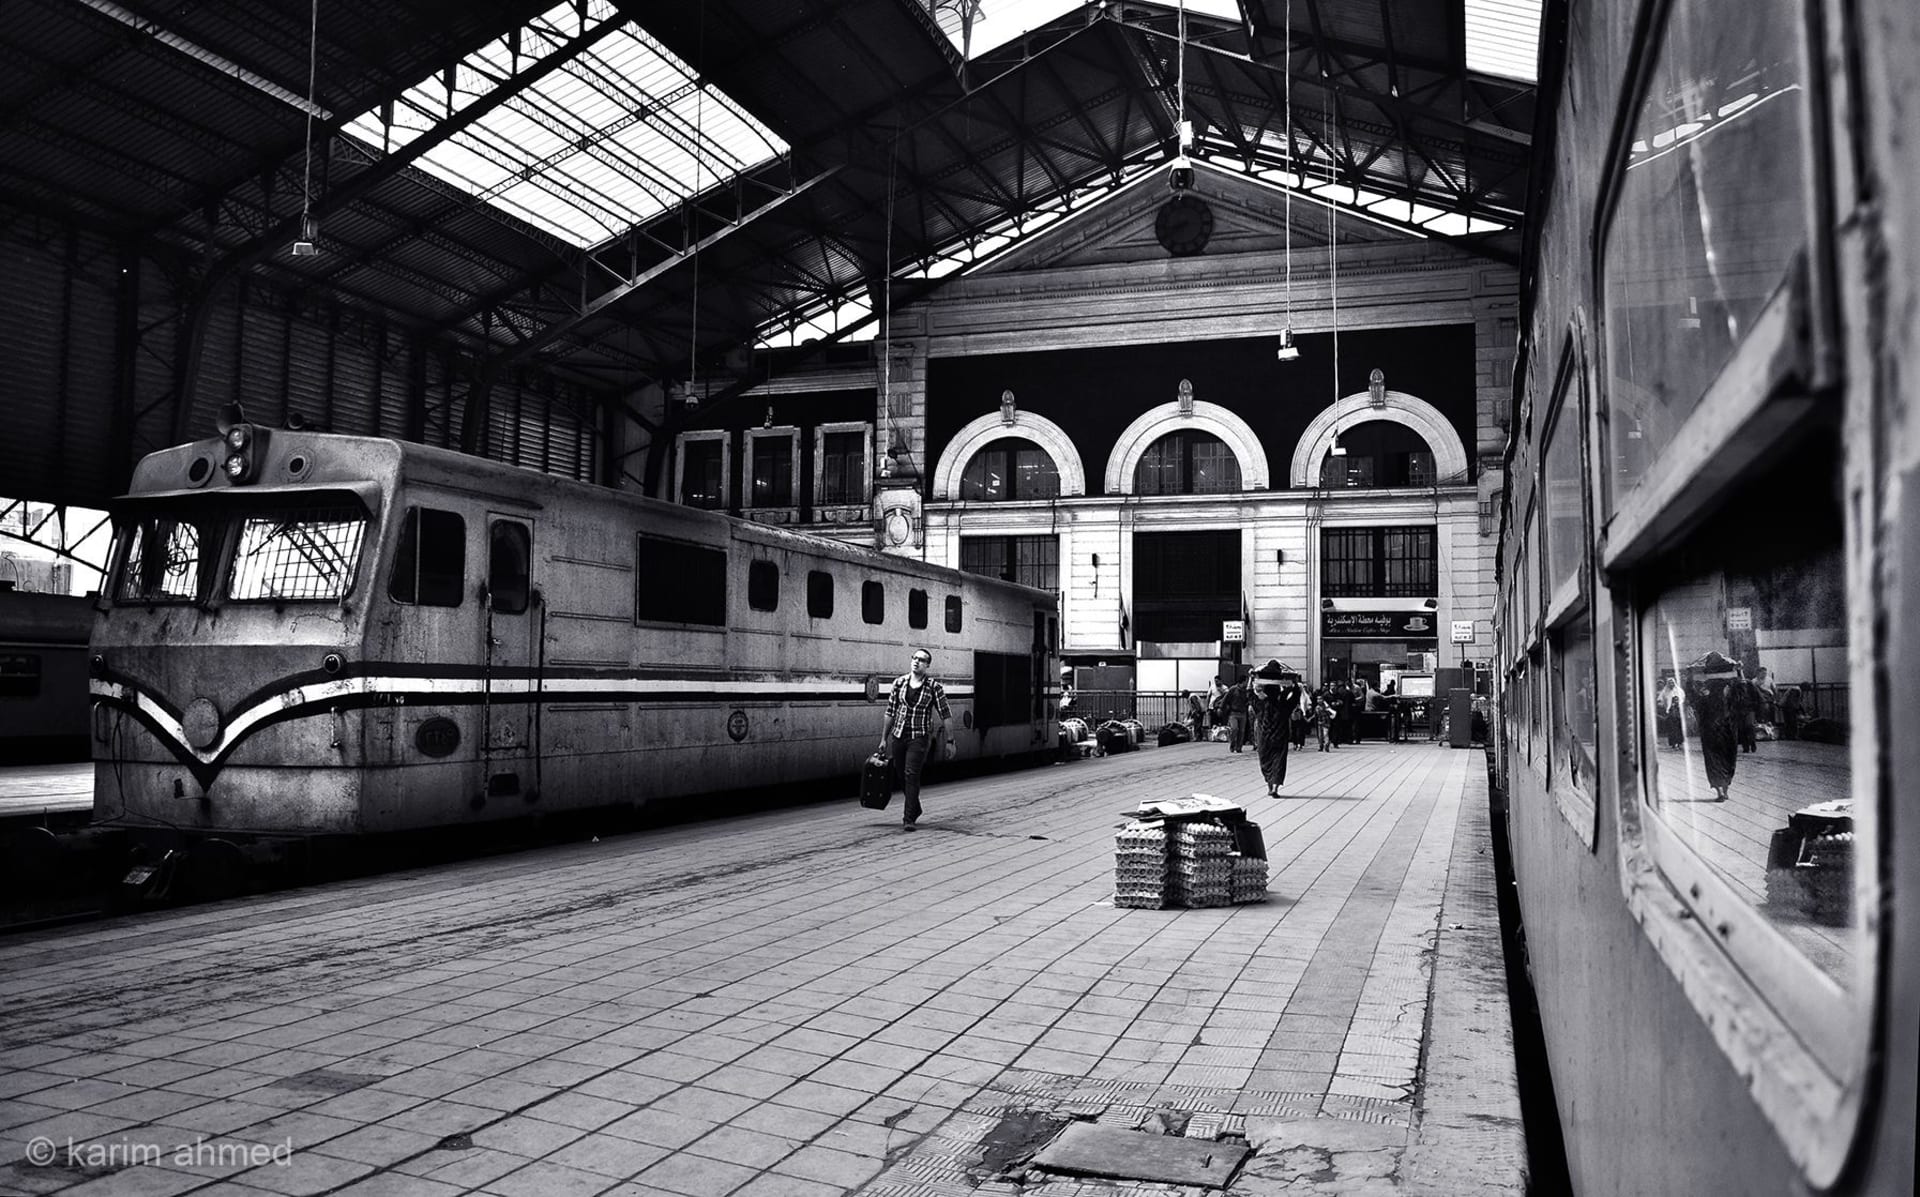 مصور يبرز رواد محطة مصر في الإسكندرية أقدم محطة قطار في أفريقيا والشرق الأوسط Cnn Arabic